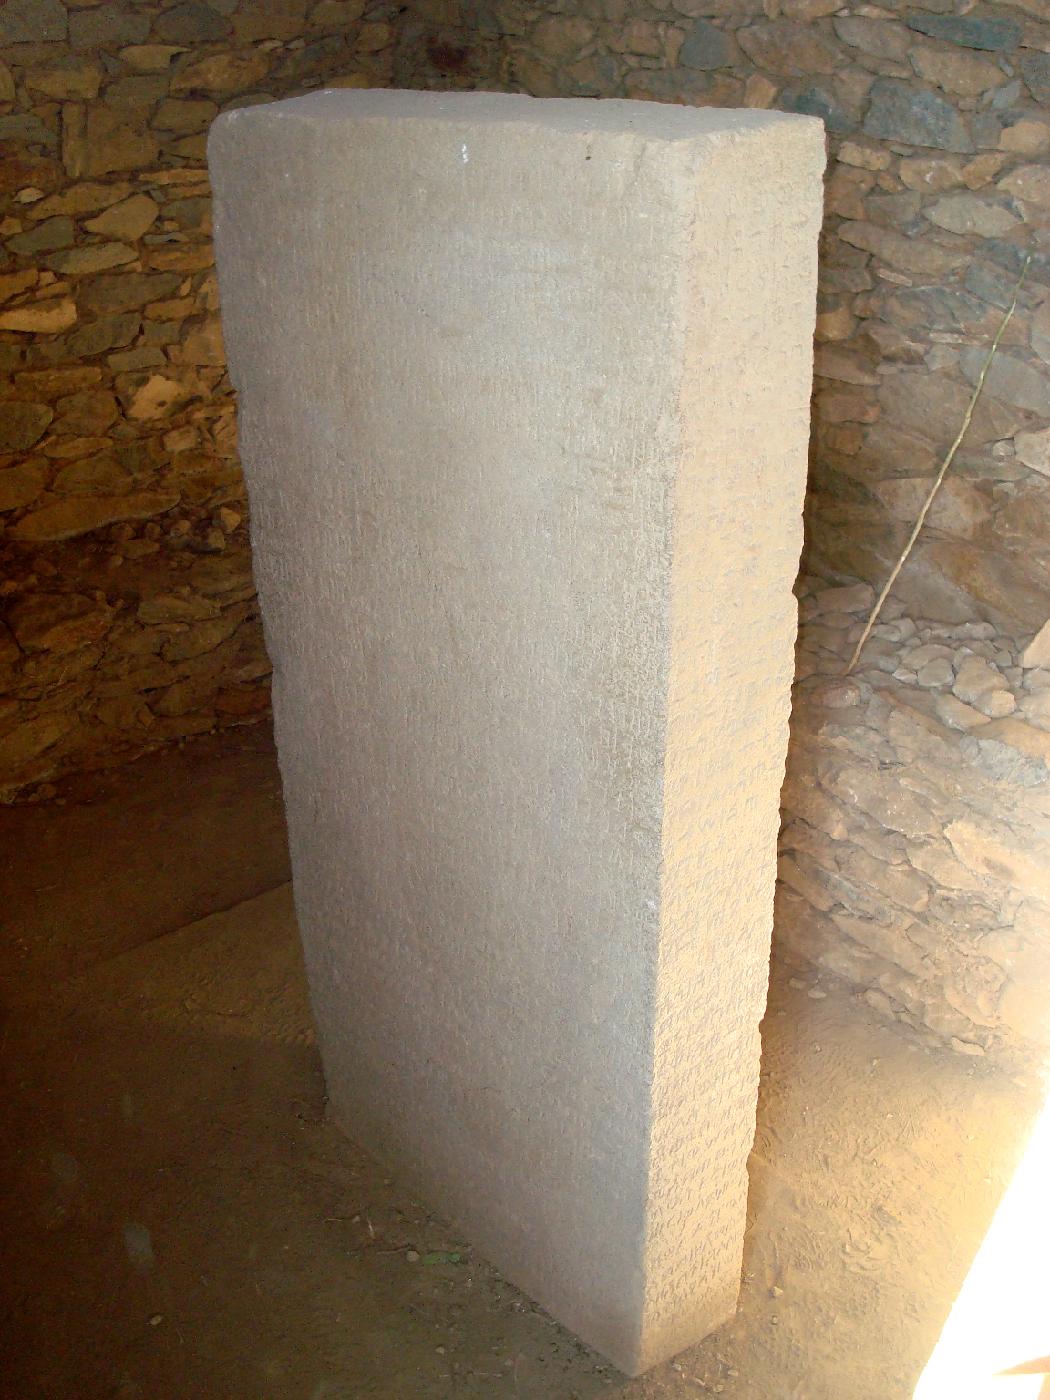 DSC031830.jpg - La pierre multilingue dEzana, trouve par un paysan labourant son champ